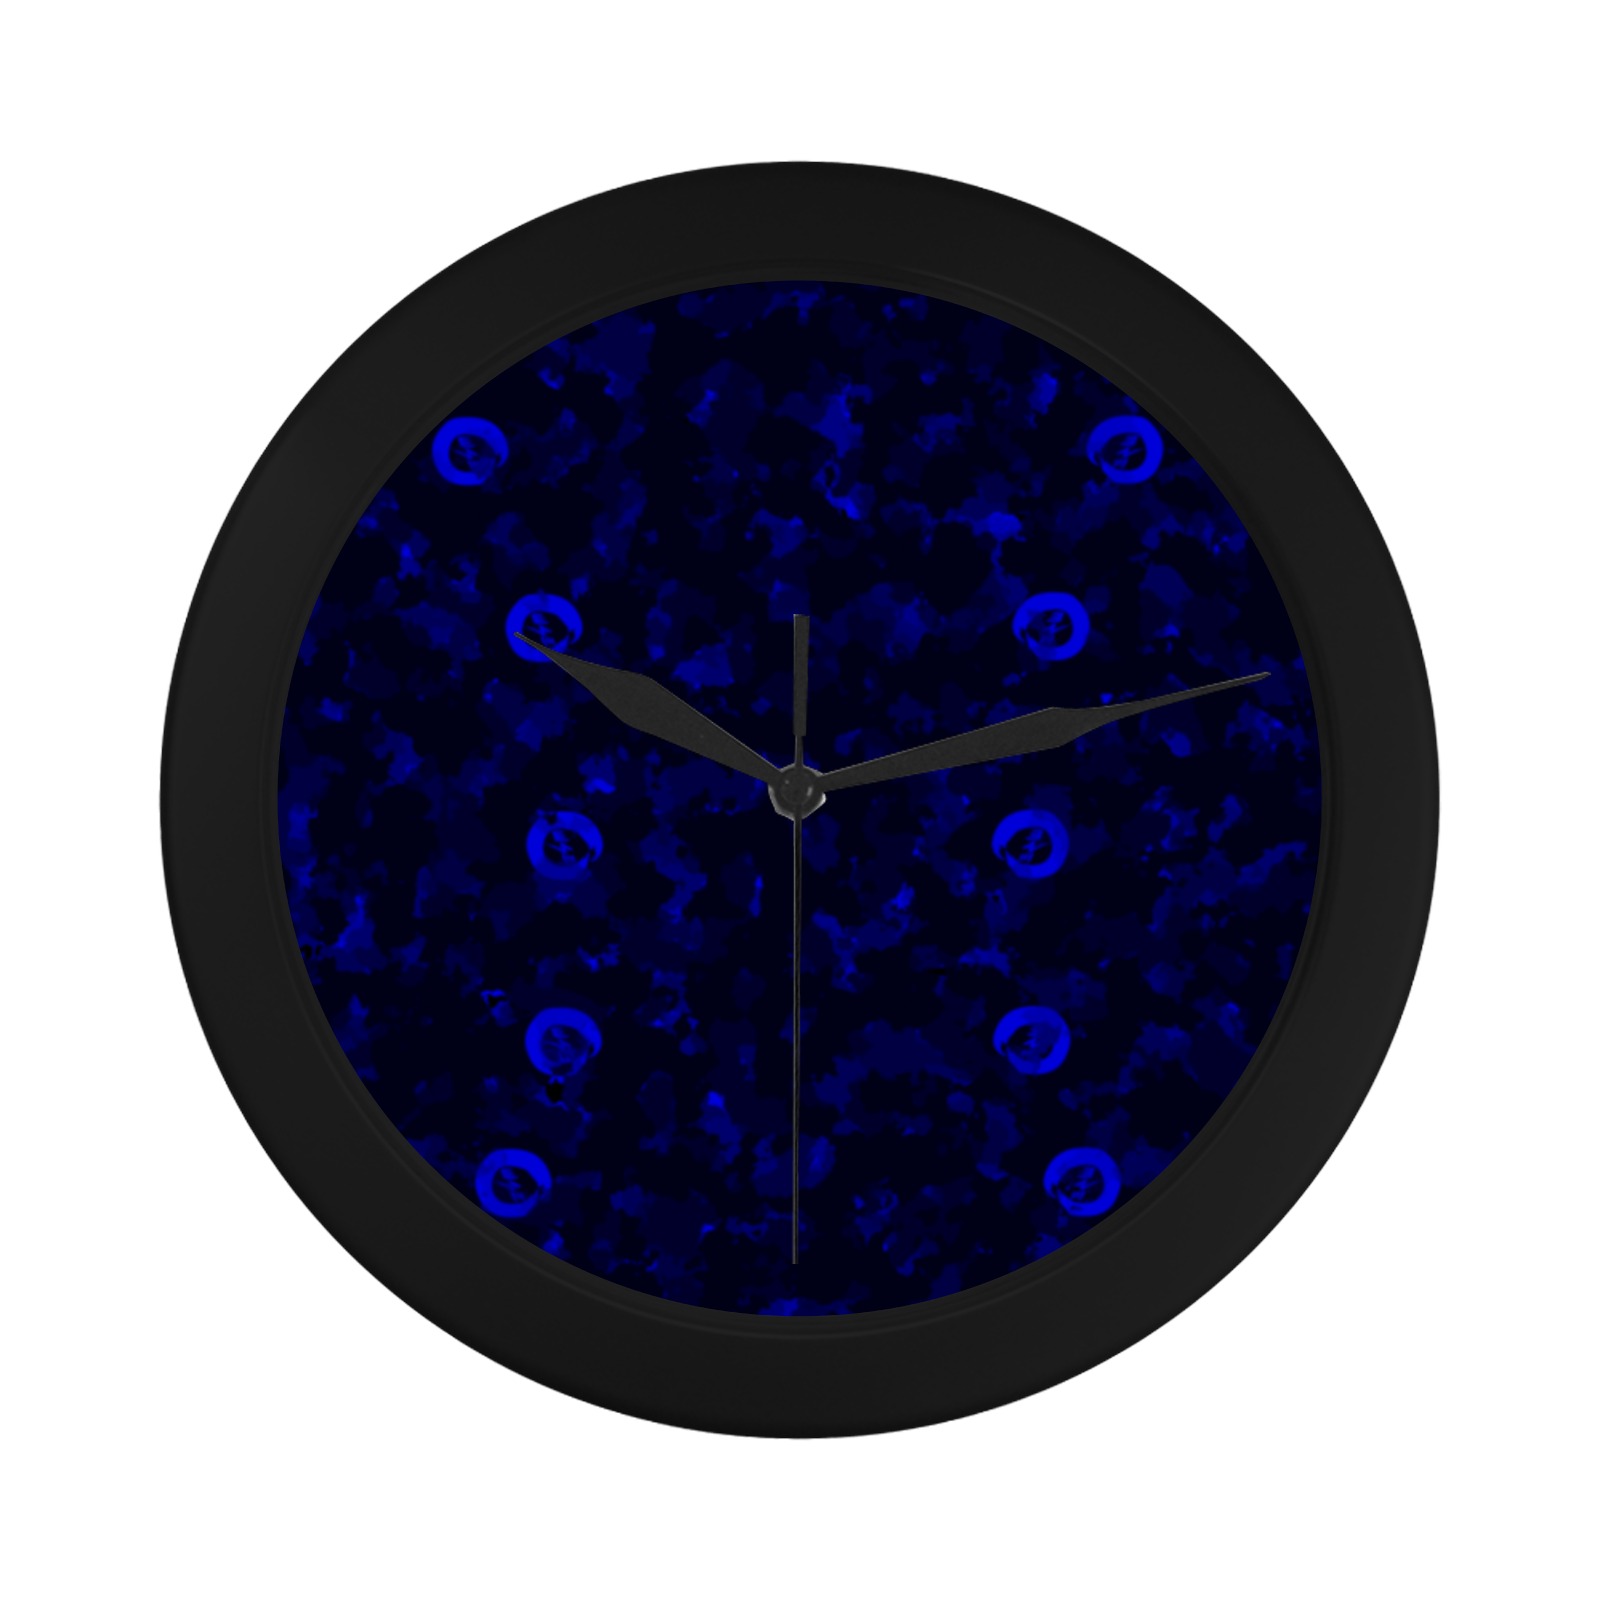 New Project (10) Circular Plastic Wall clock